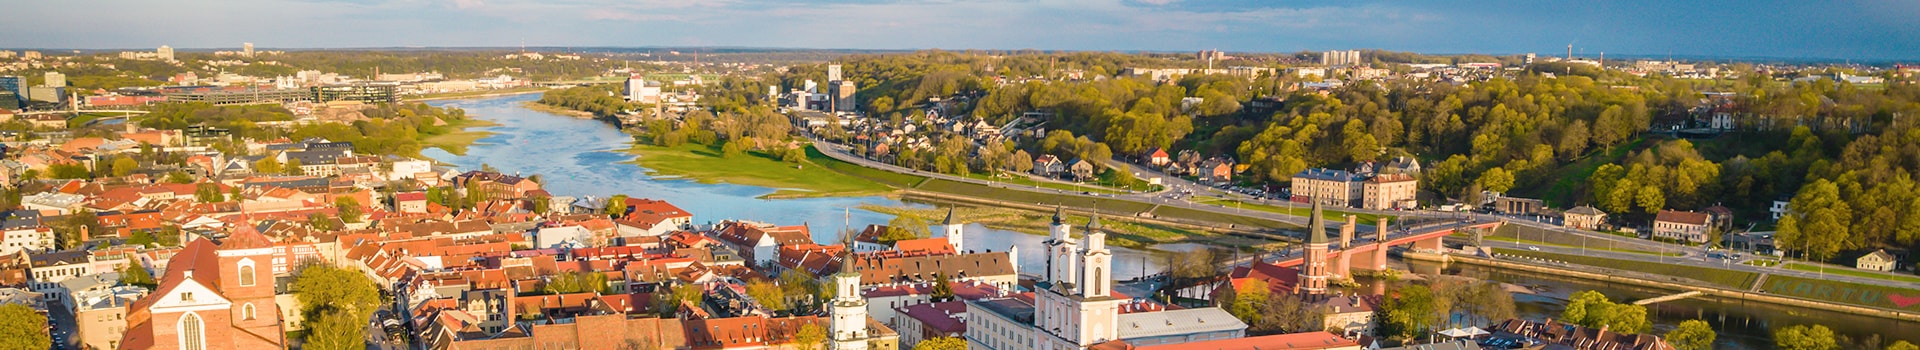 Majorca - Kaunas